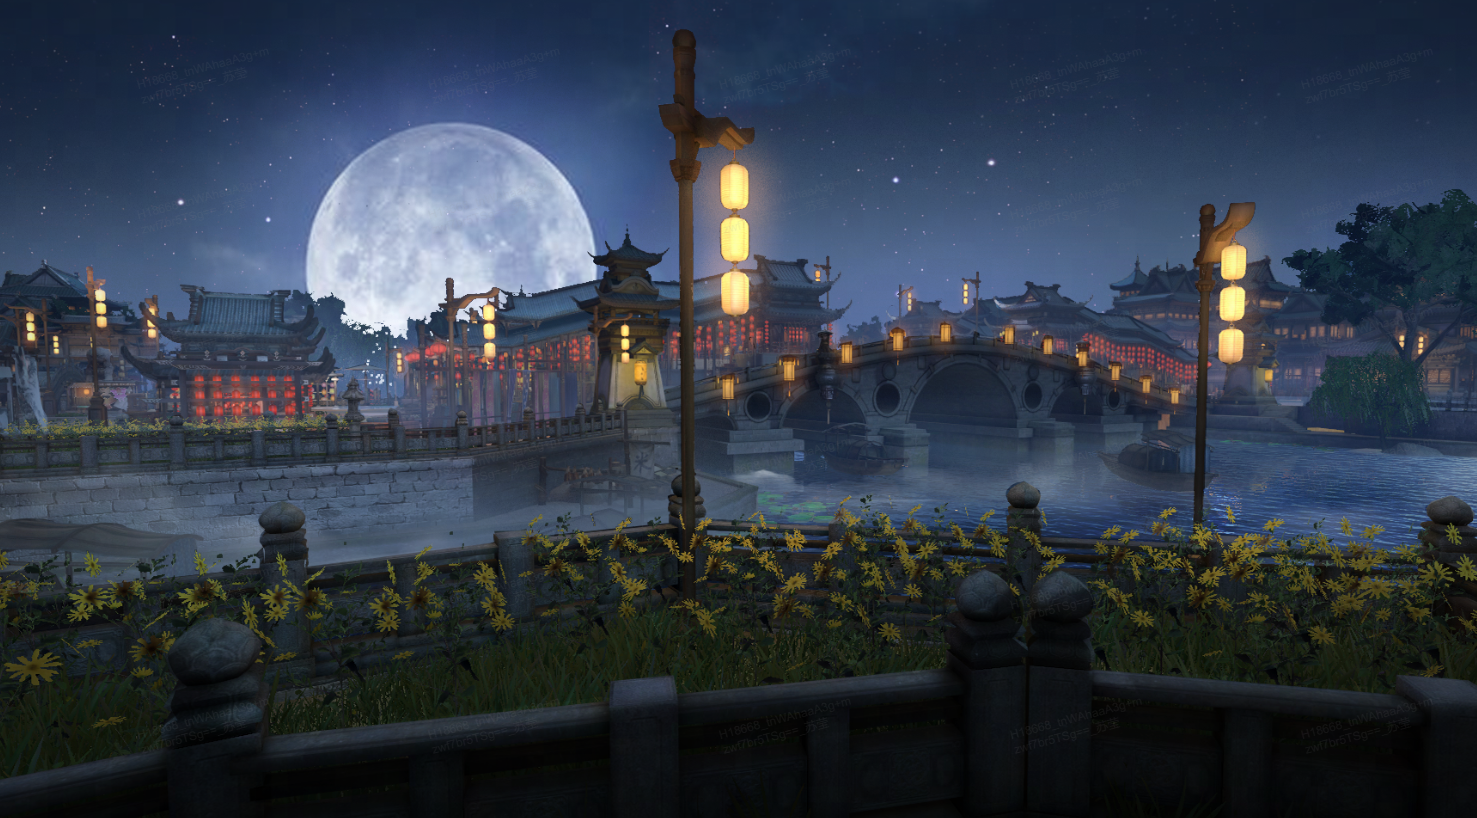 这是一幅东亚风格的古桥夜景图，满月高悬，古桥上灯笼点亮，河畔花草随风摇曳，宁静而古雅。